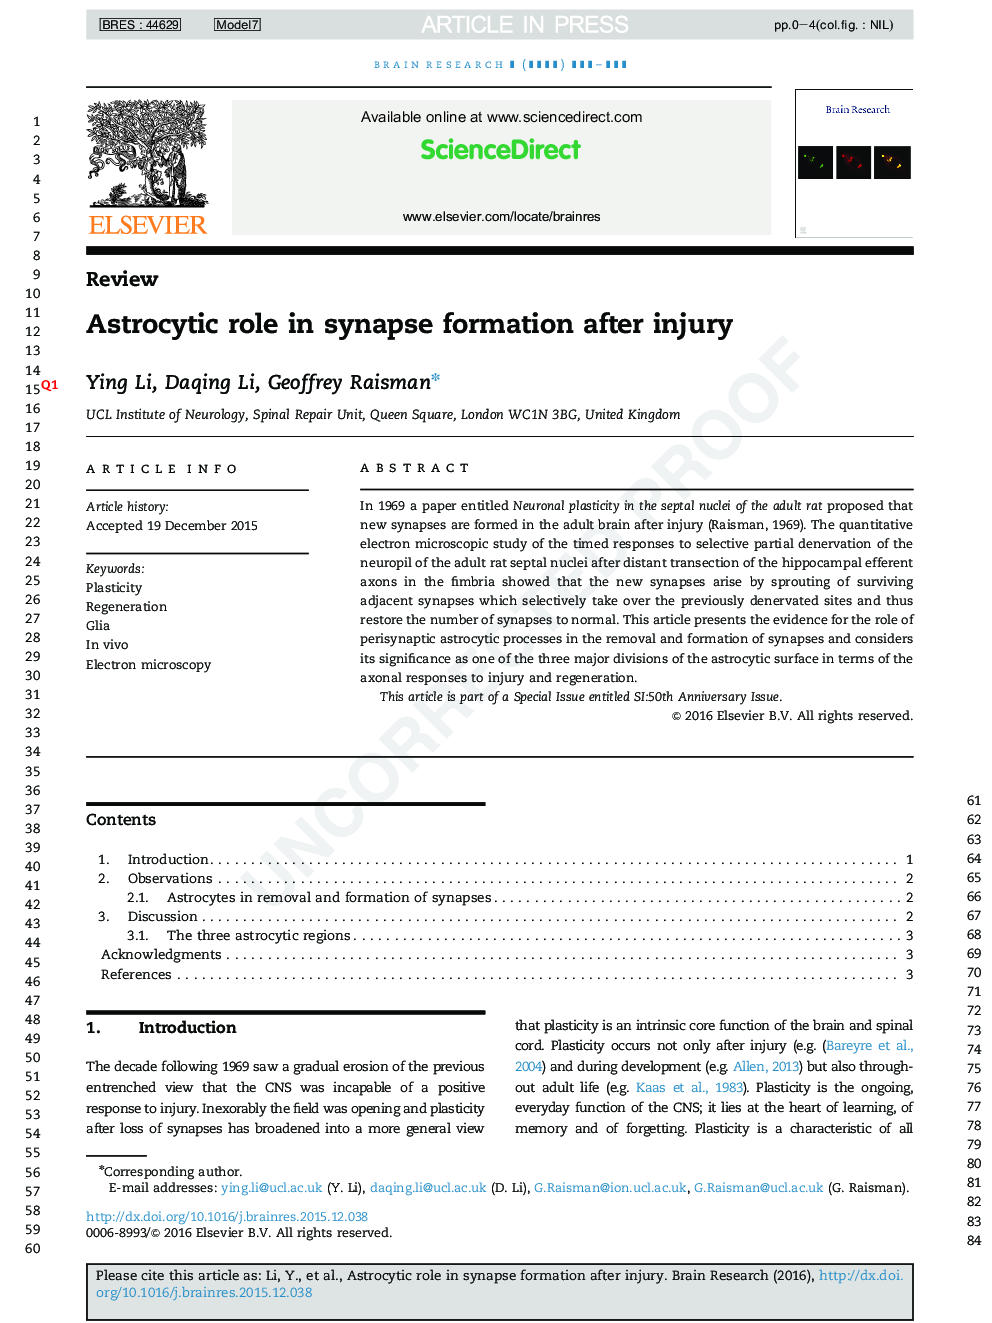 نقش آستروسیتیک در تشکیل سیناپس پس از آسیب 